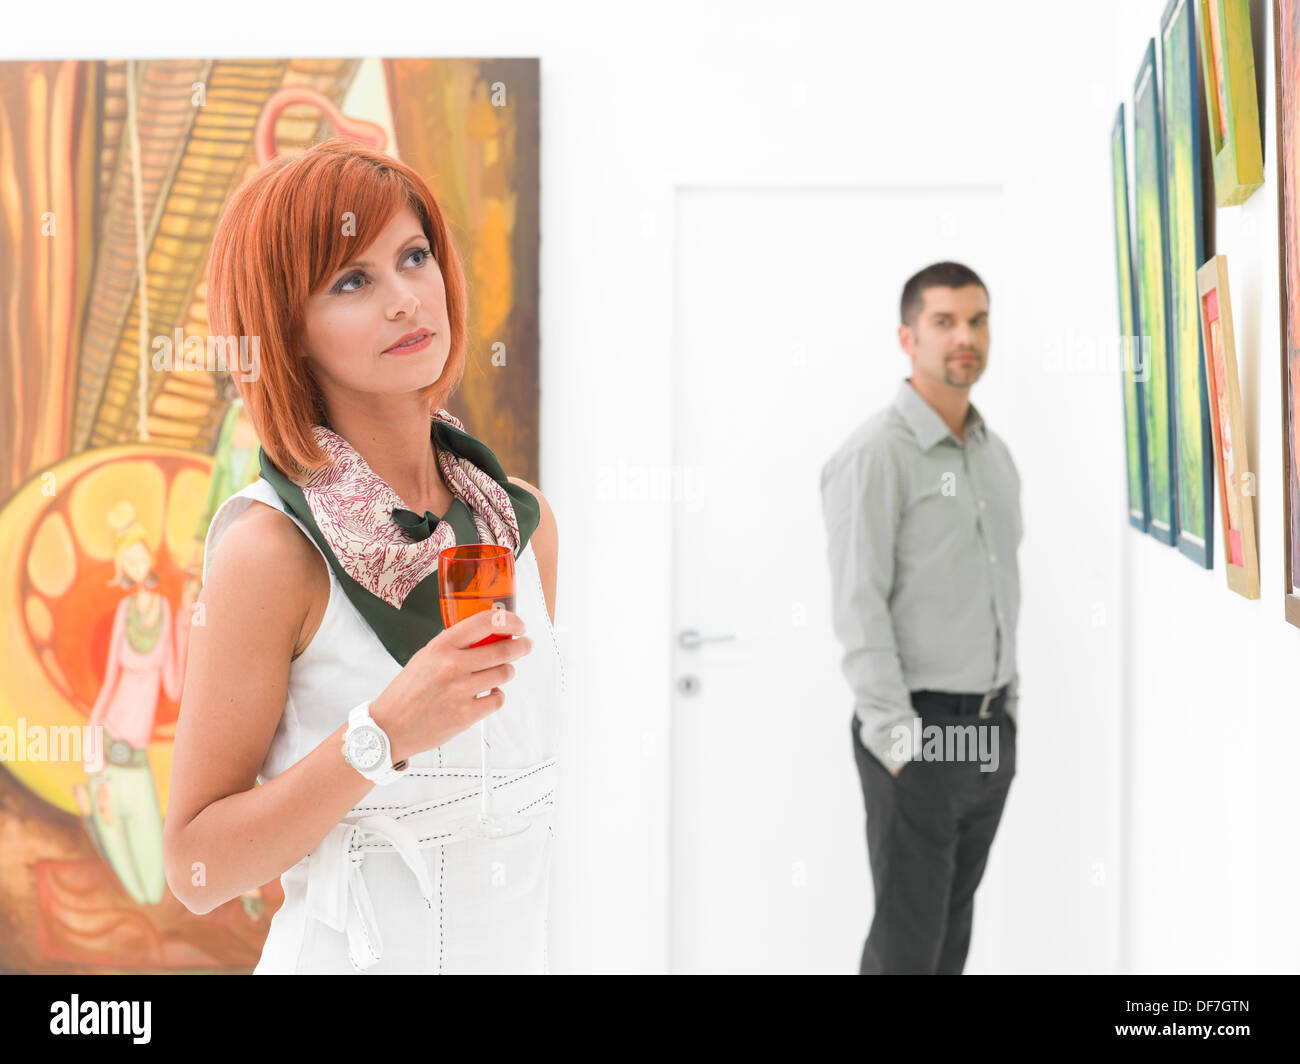 Mann, eine junge schöne rothaarige Frau in einer Kunstgalerie zu bewundern Stockfoto